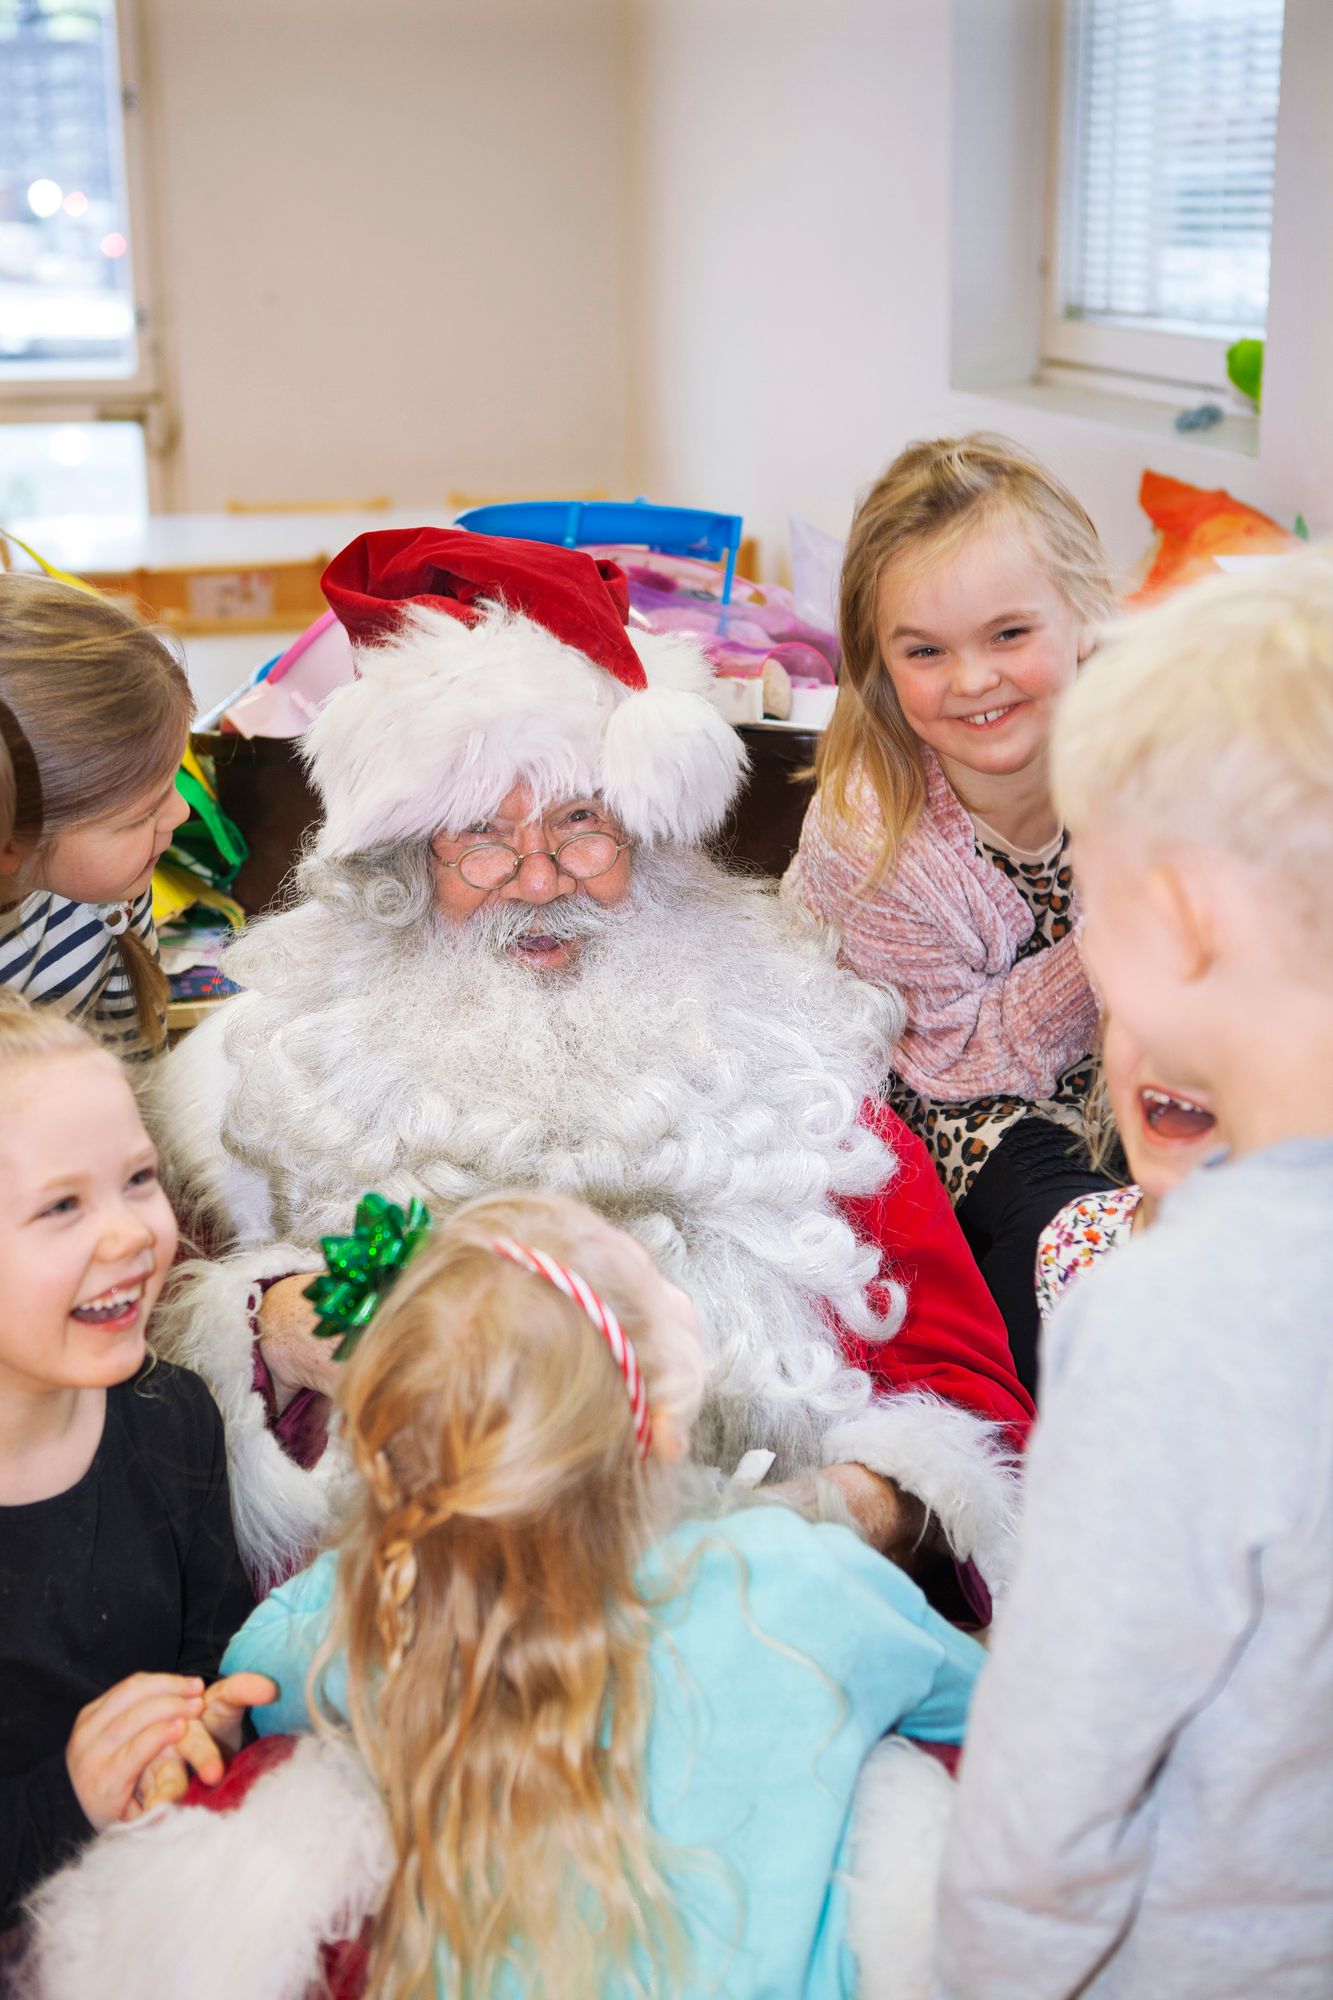 Hampaiden irtoamis­muistelut naurattavat niin lapsia kuin joulupukkia. Oikealla ylhäällä katsoo Ebba Kyllönen, alhaalla vasemmalla katsoo Ester Thun. © Sini-Marja Niska